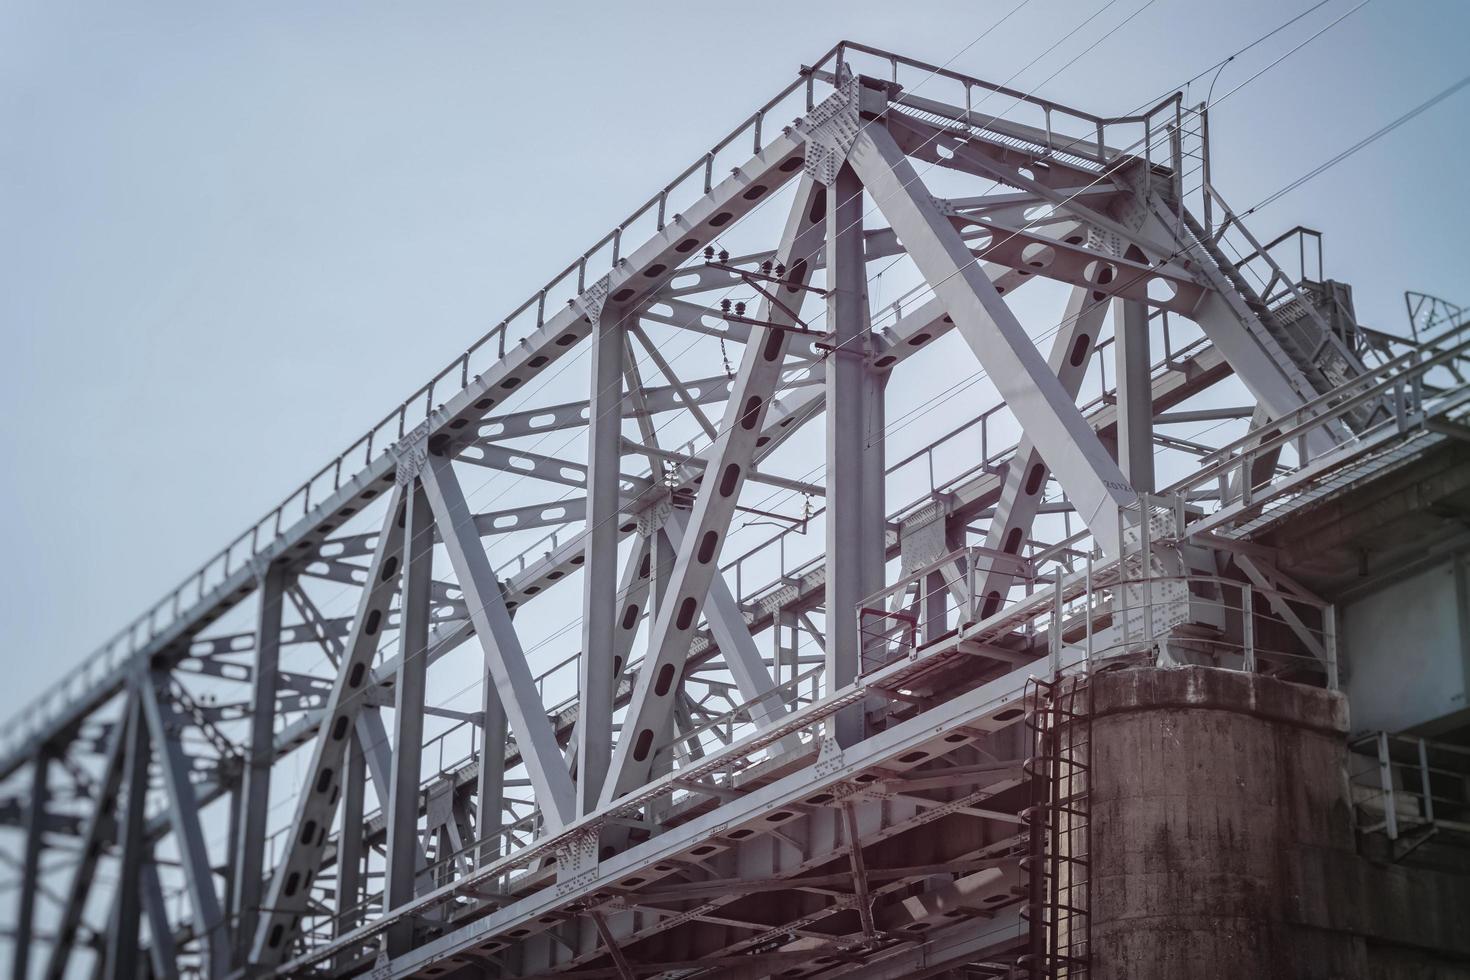 ponte ferroviária feita de vigas metálicas sobre uma base de concreto. foto